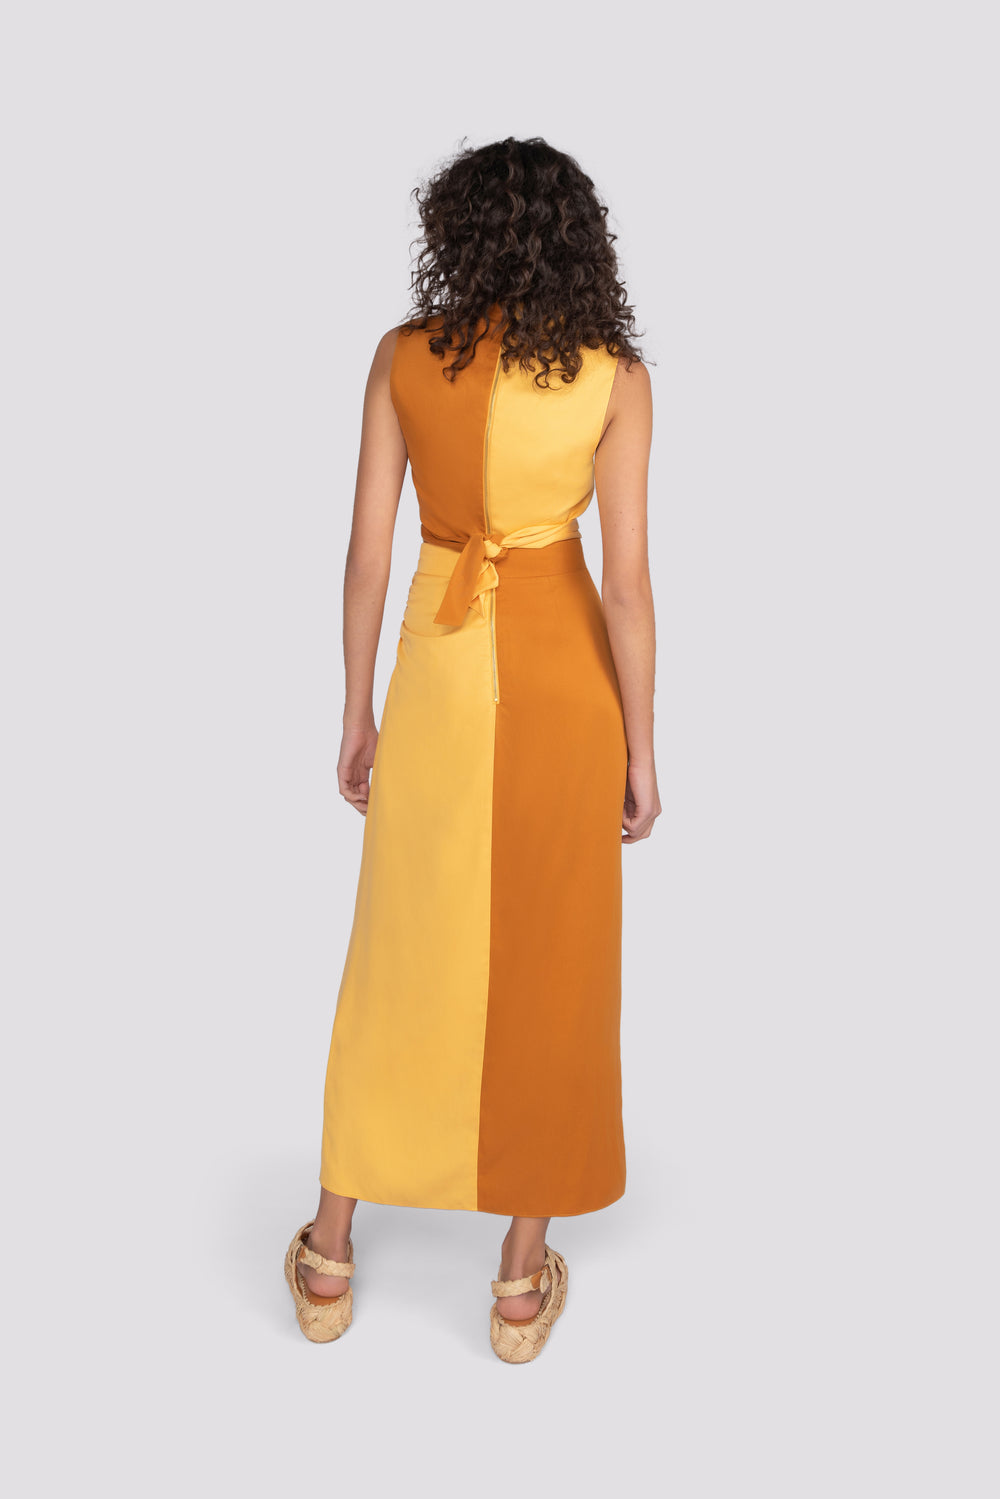 Twisted Lenzing Skirt - Golden Cream & Sudan Brown | Sunset Lover